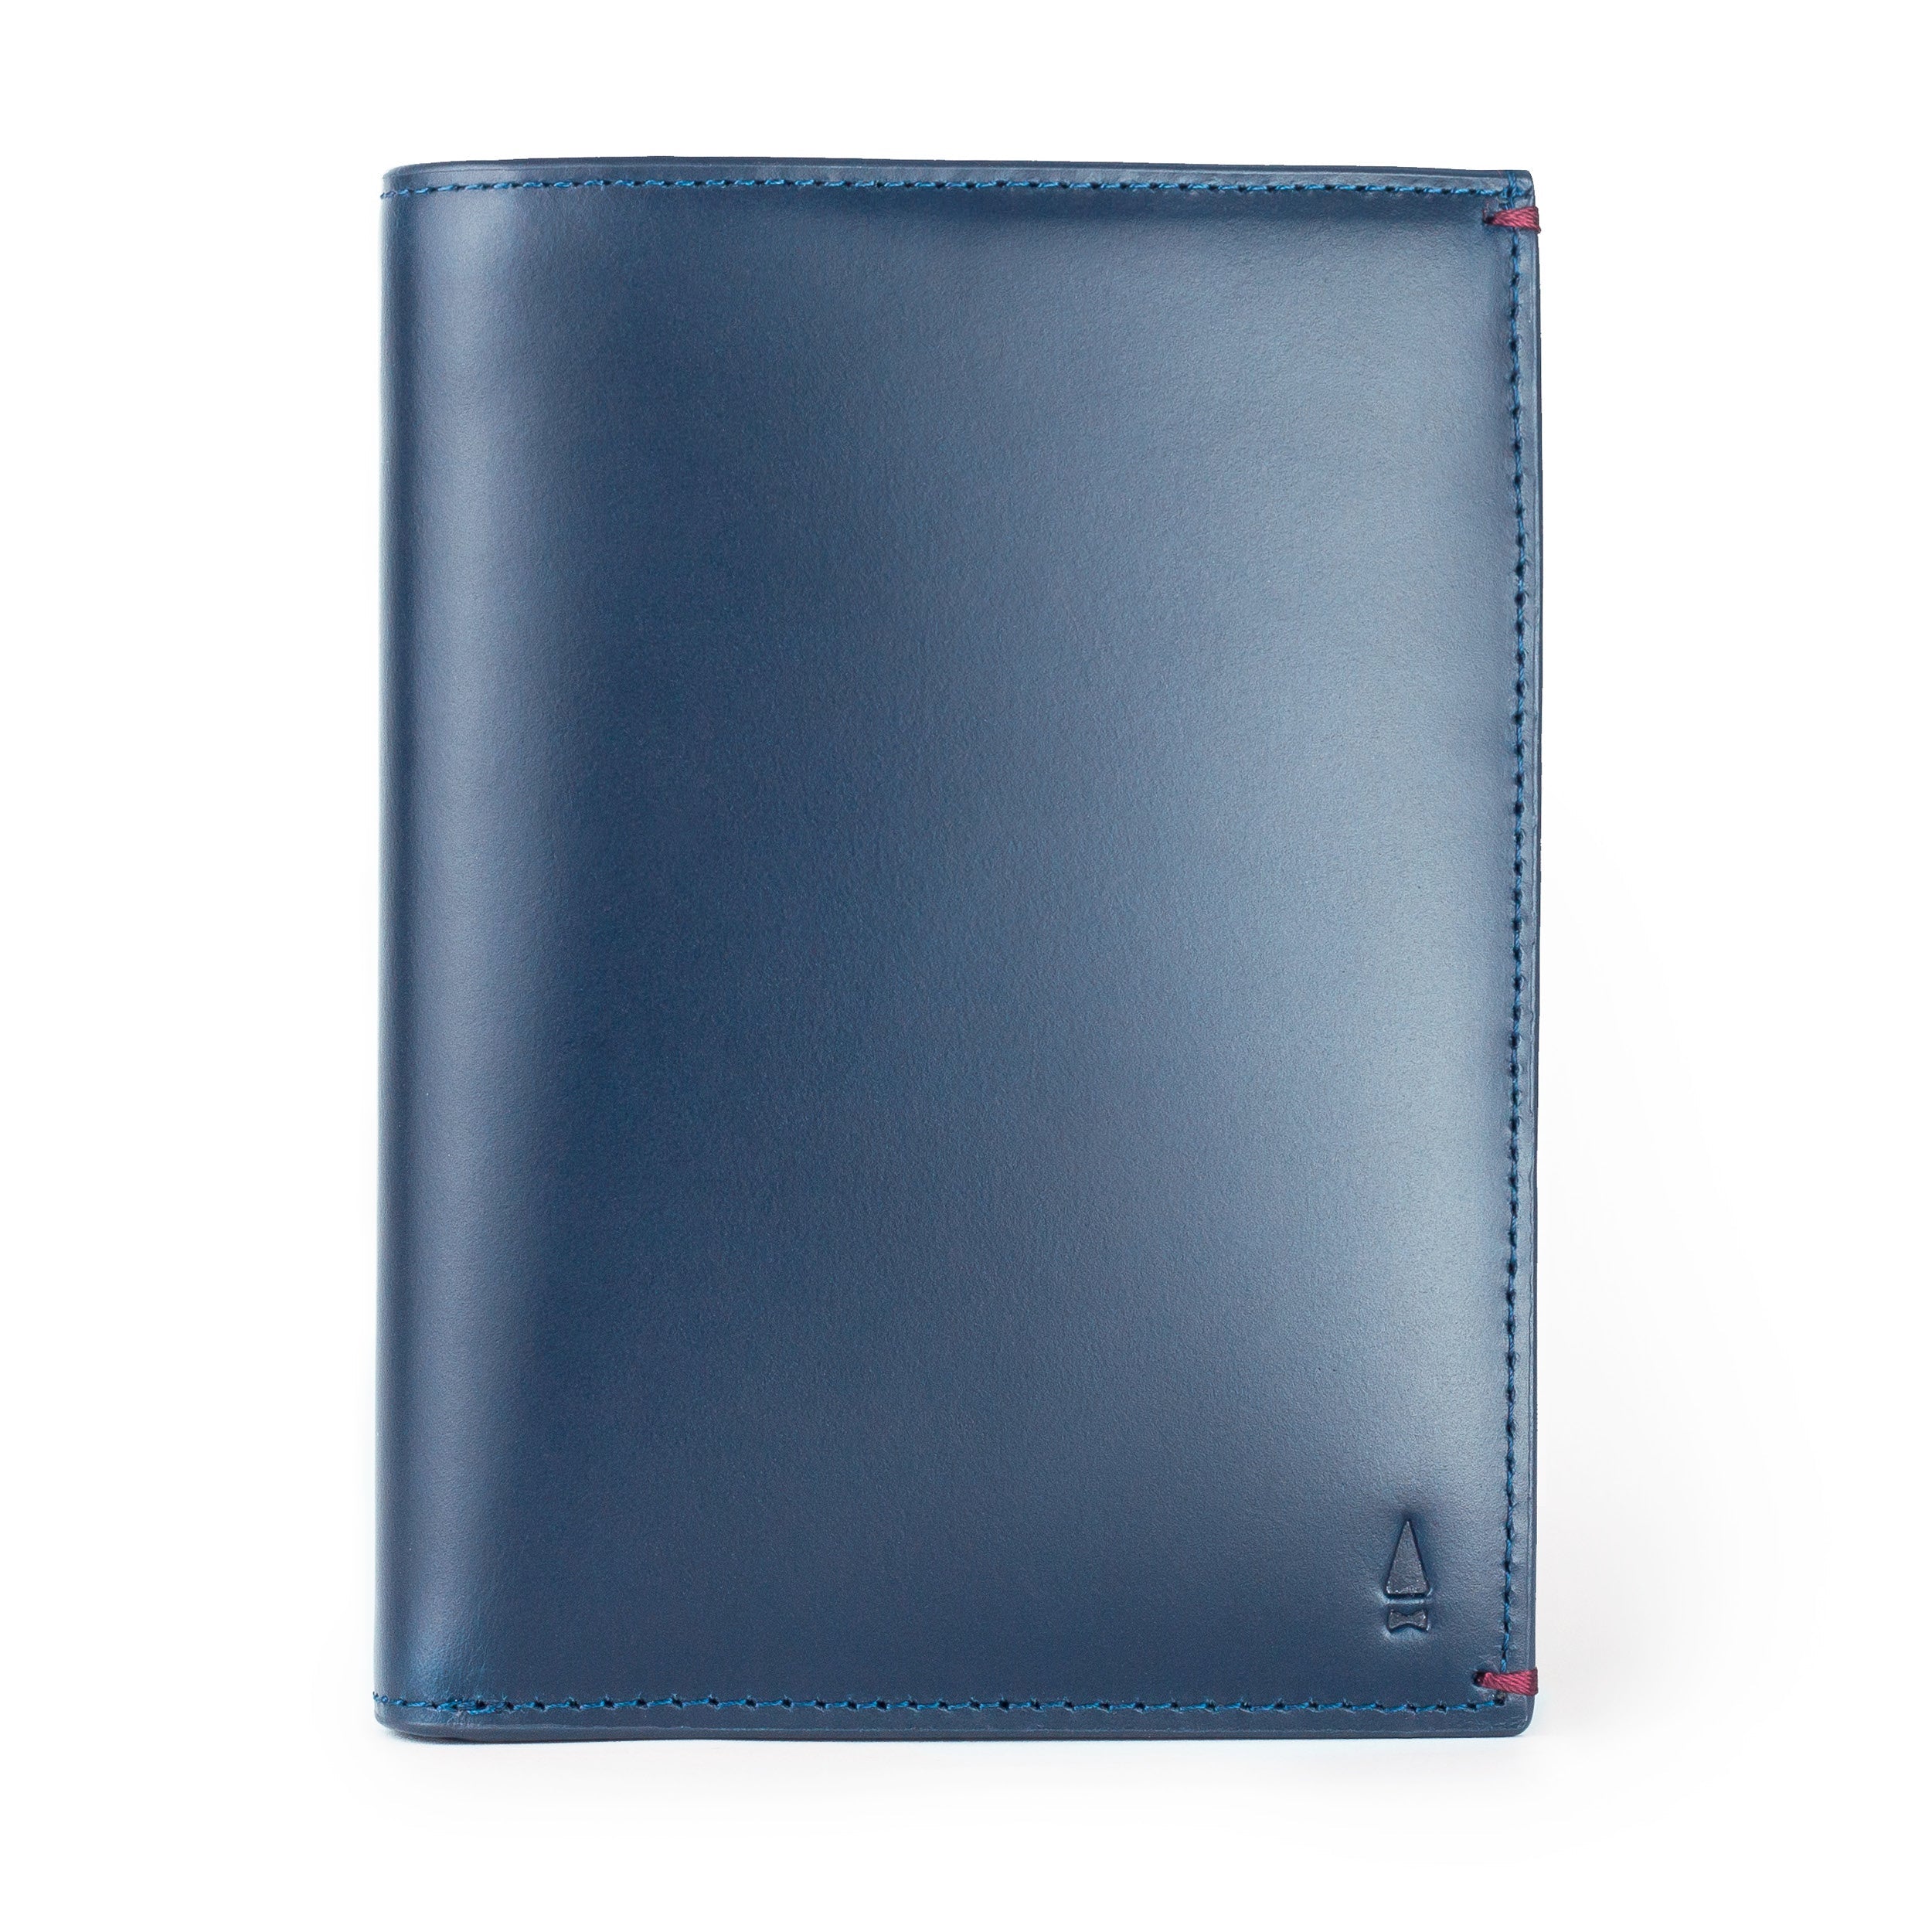 Gulliver Travel Passport Holder (RFID USA Wax Leather)